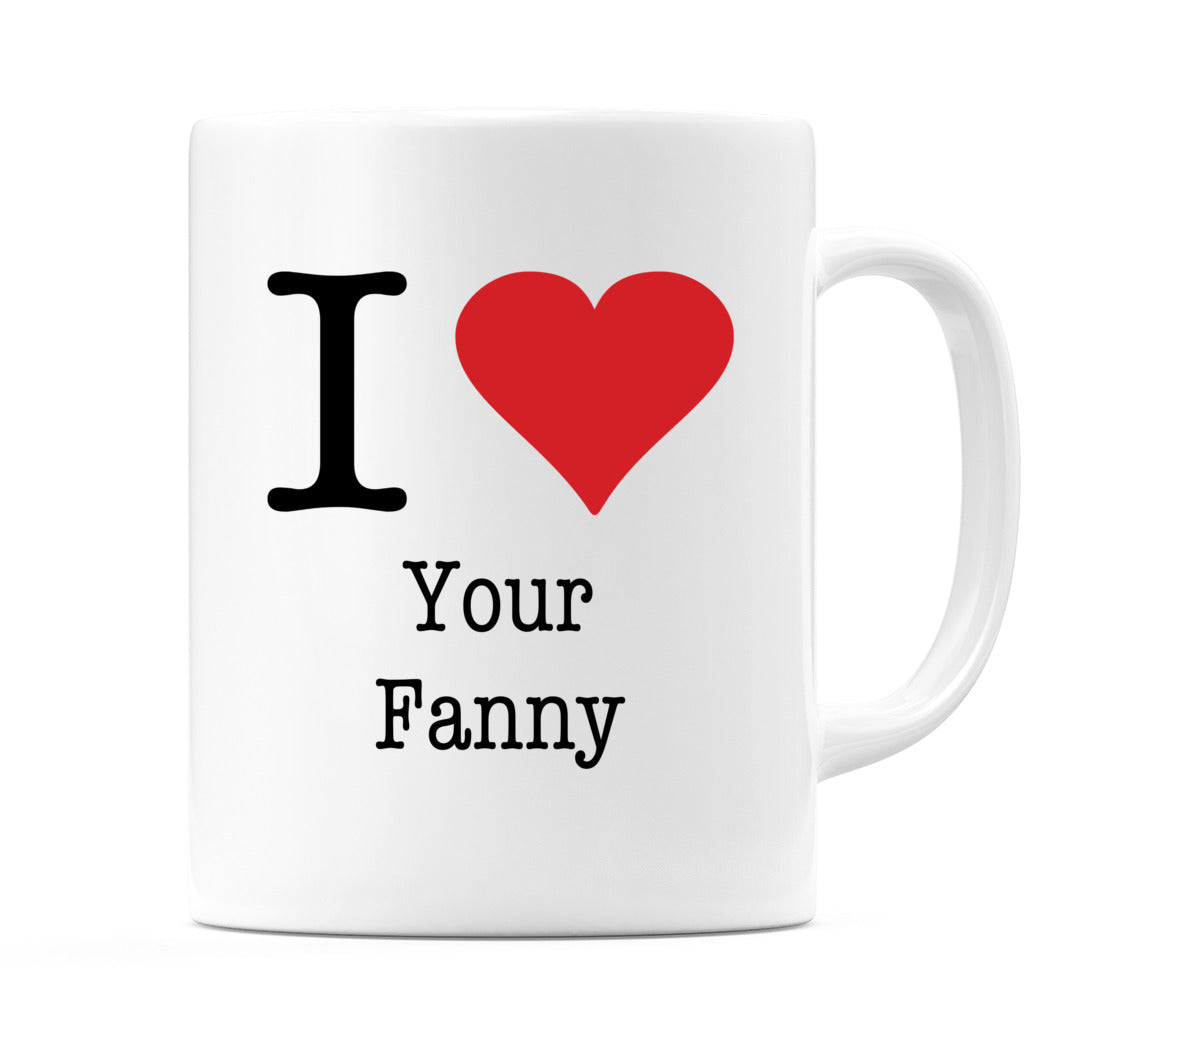 I Love Your Fanny Mug